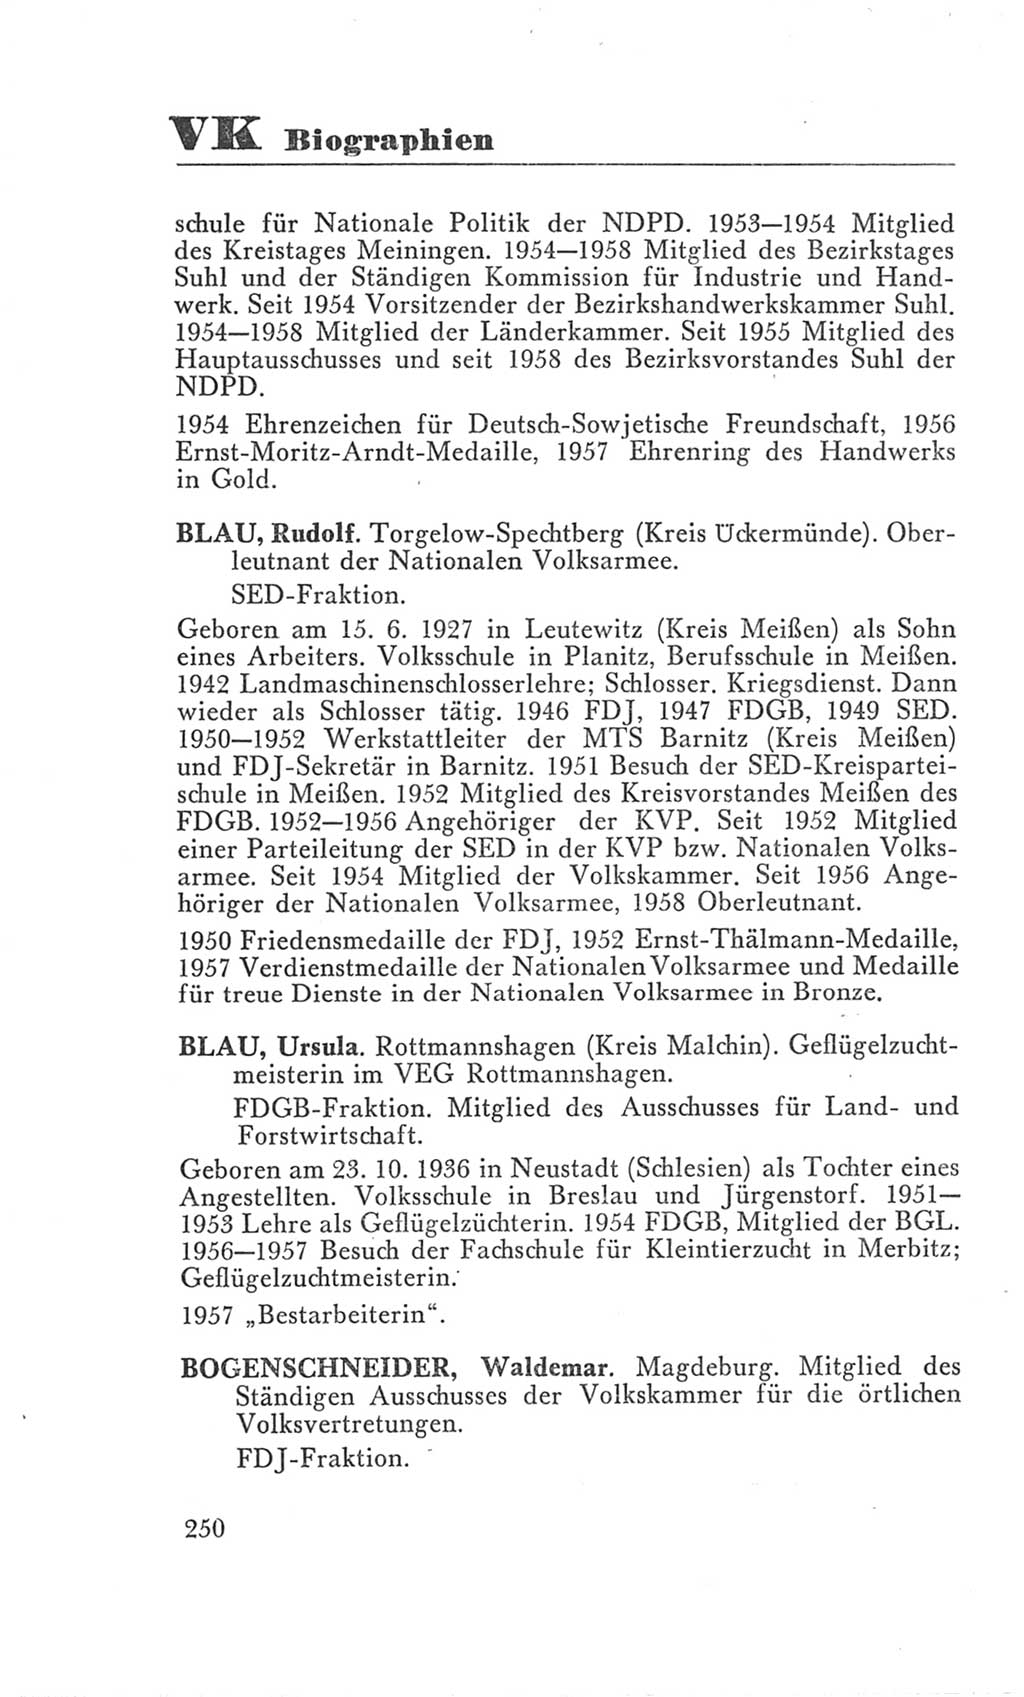 Handbuch der Volkskammer (VK) der Deutschen Demokratischen Republik (DDR), 3. Wahlperiode 1958-1963, Seite 250 (Hdb. VK. DDR 3. WP. 1958-1963, S. 250)